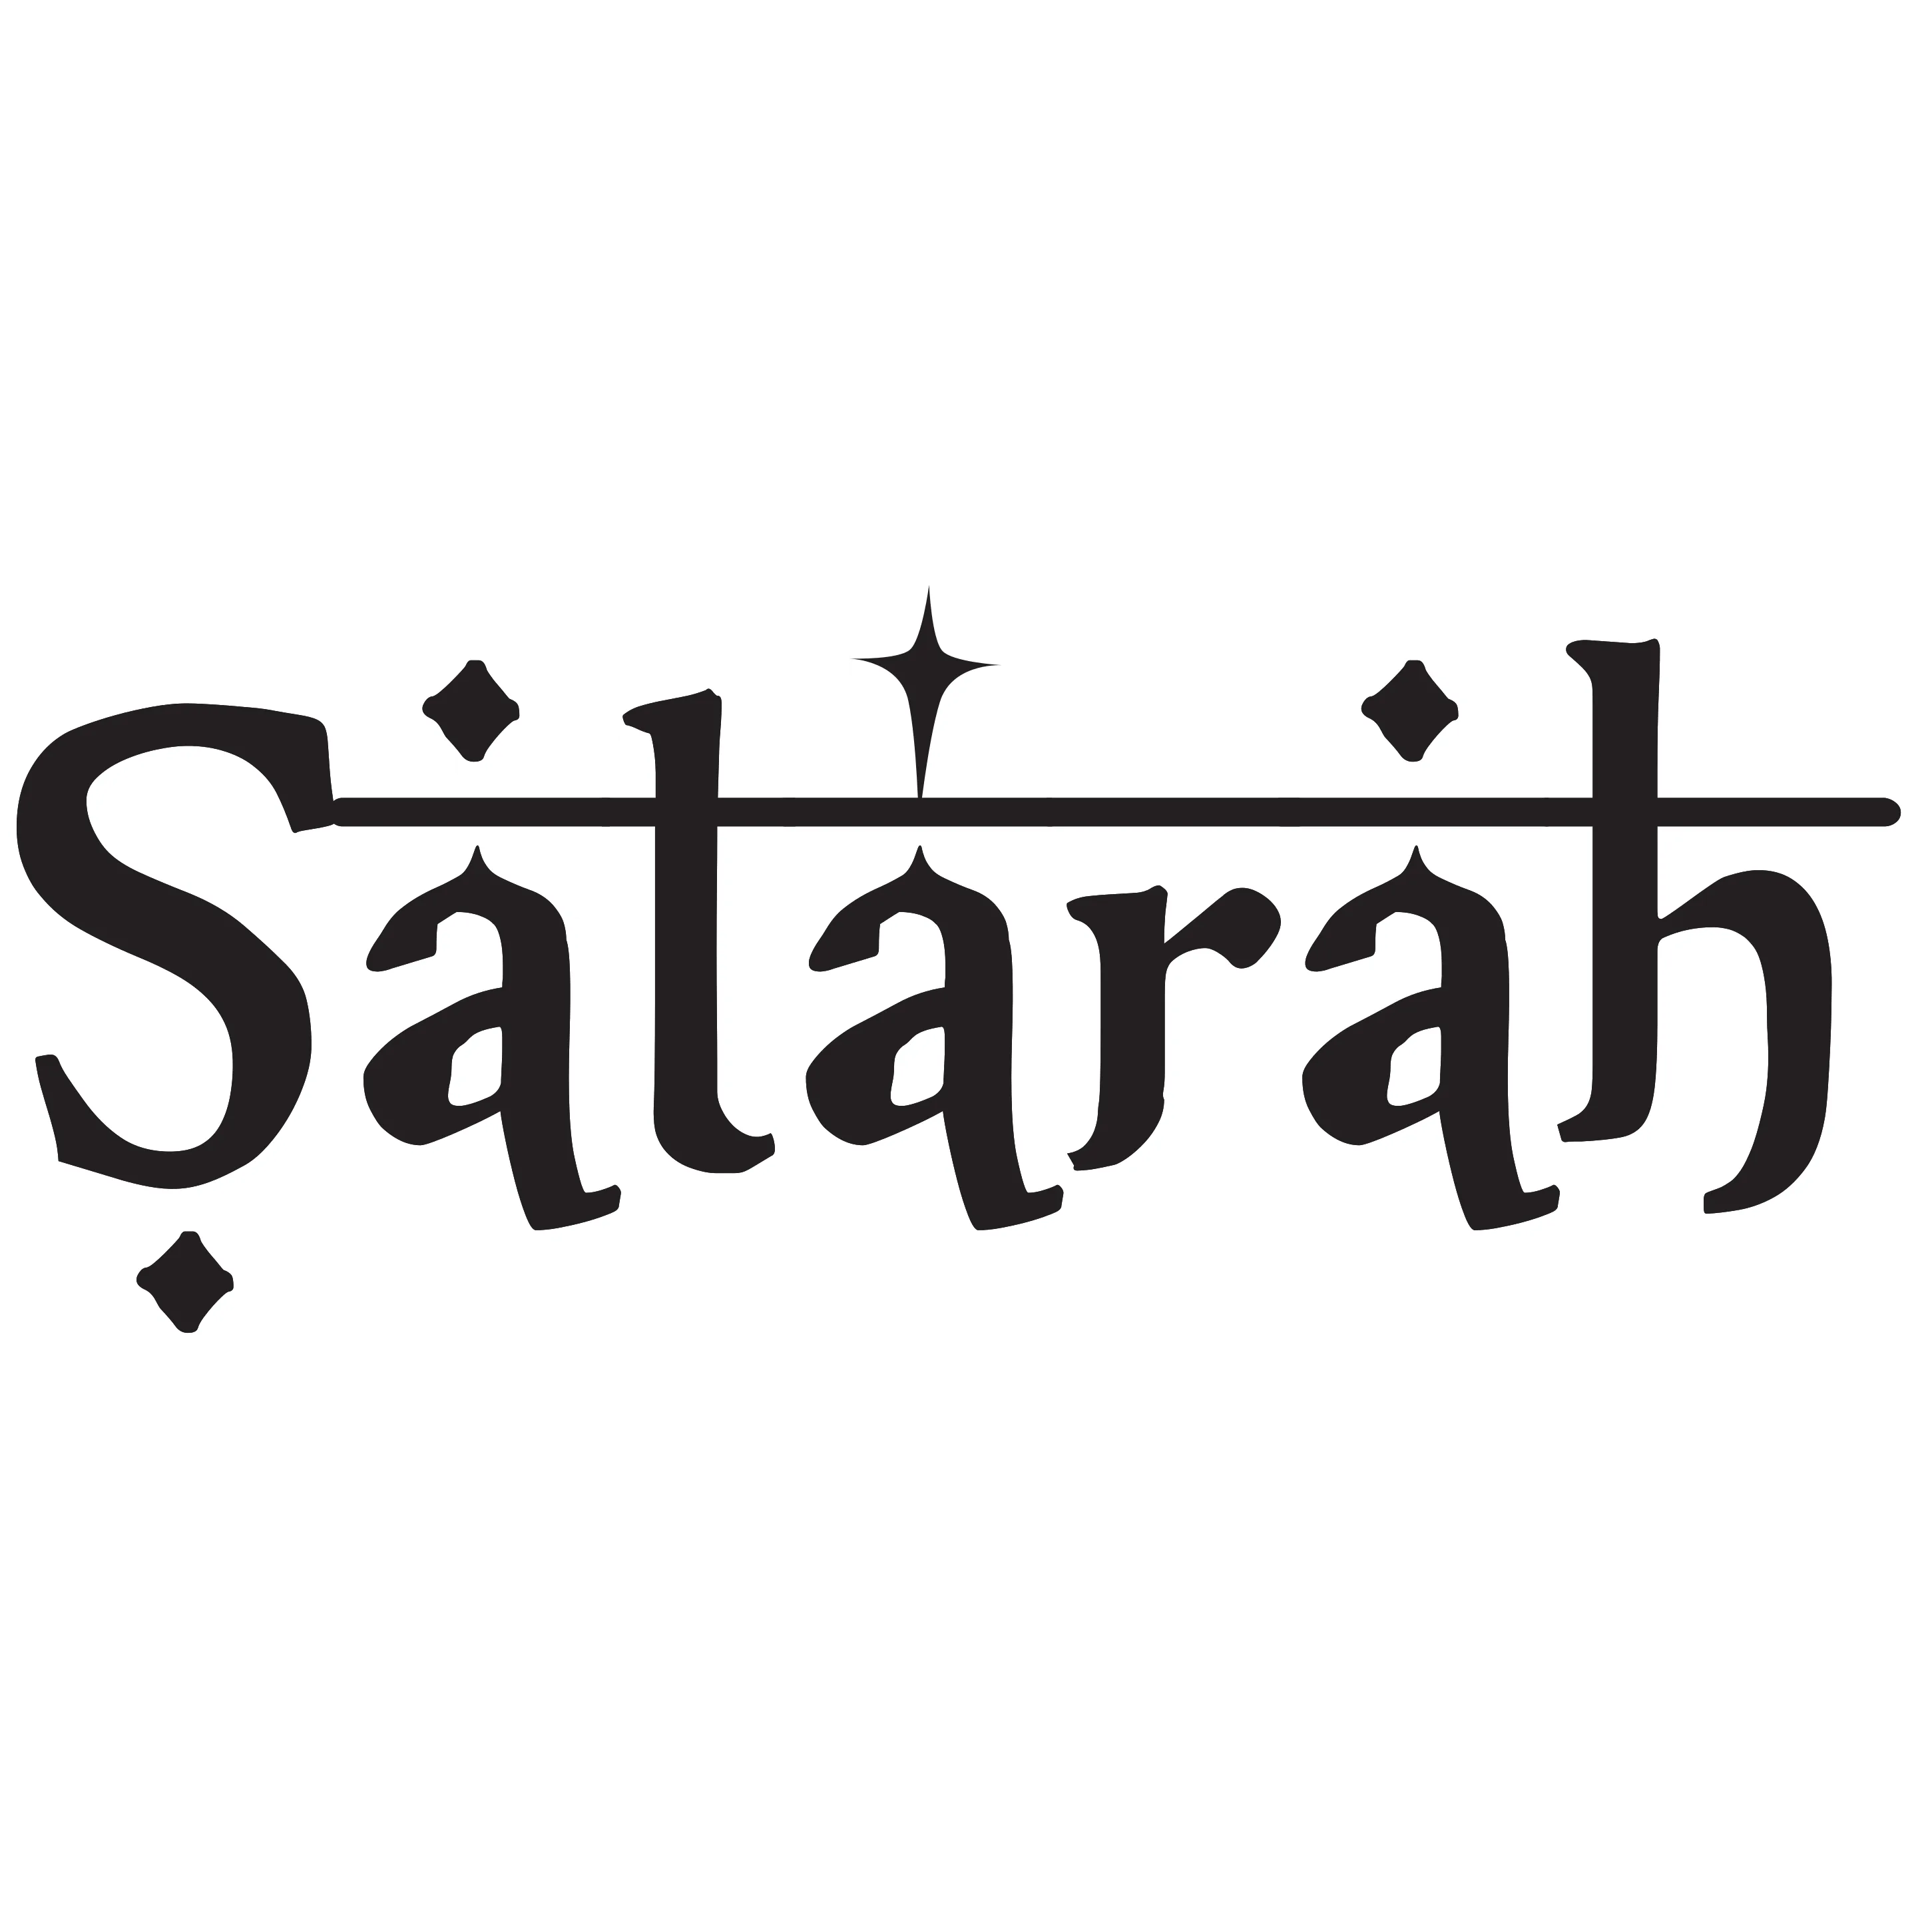 Satarah Productions